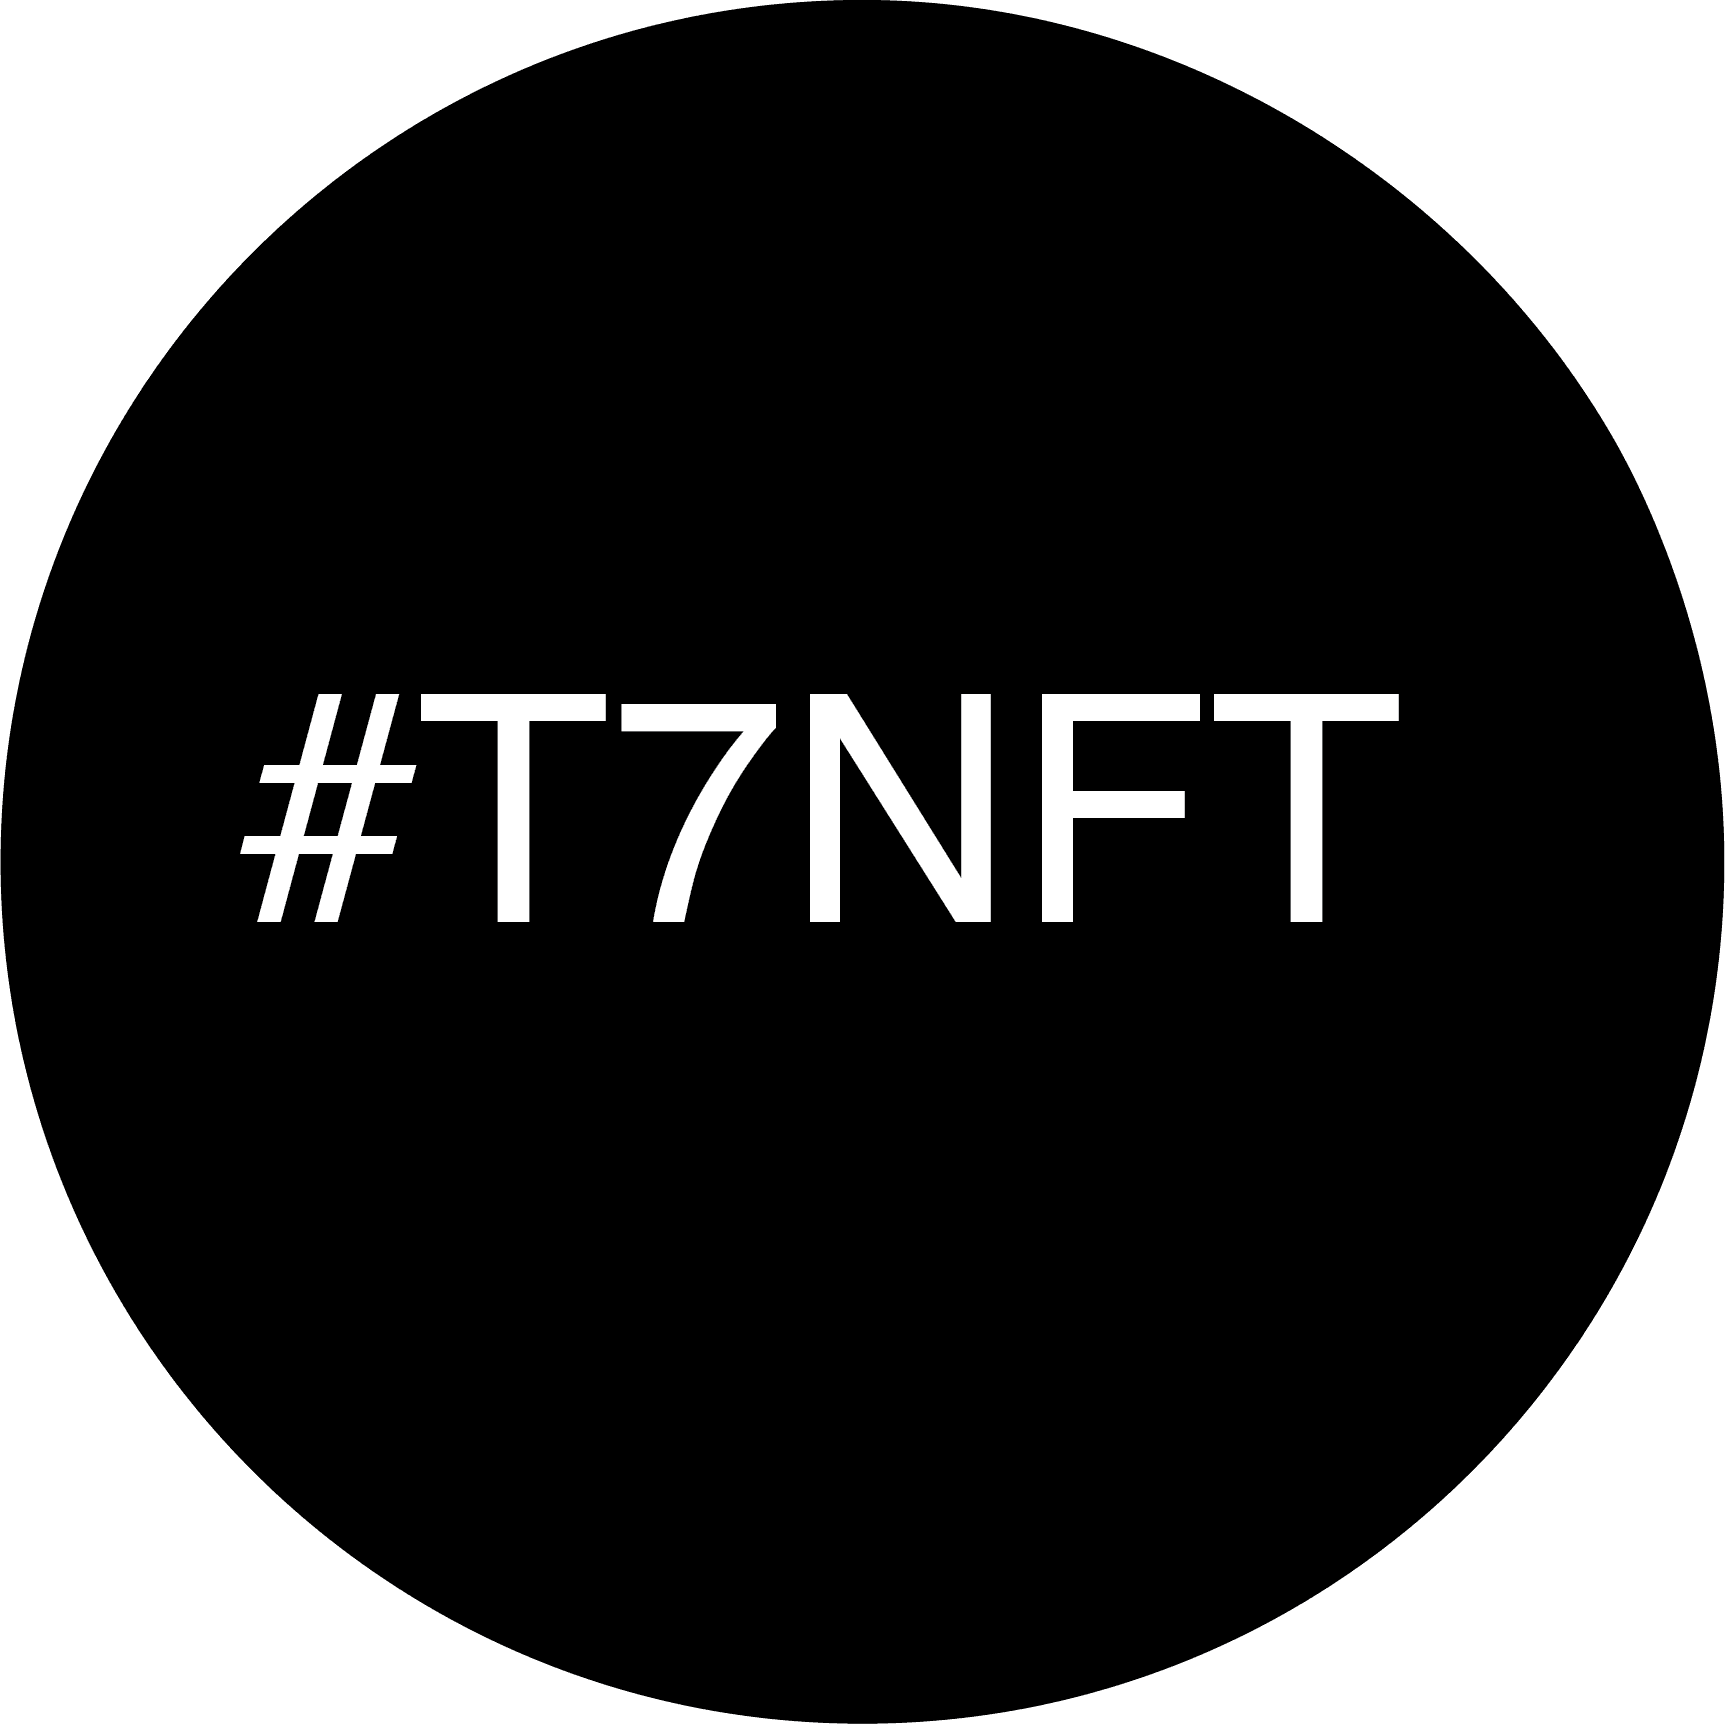 T7NFTYYC